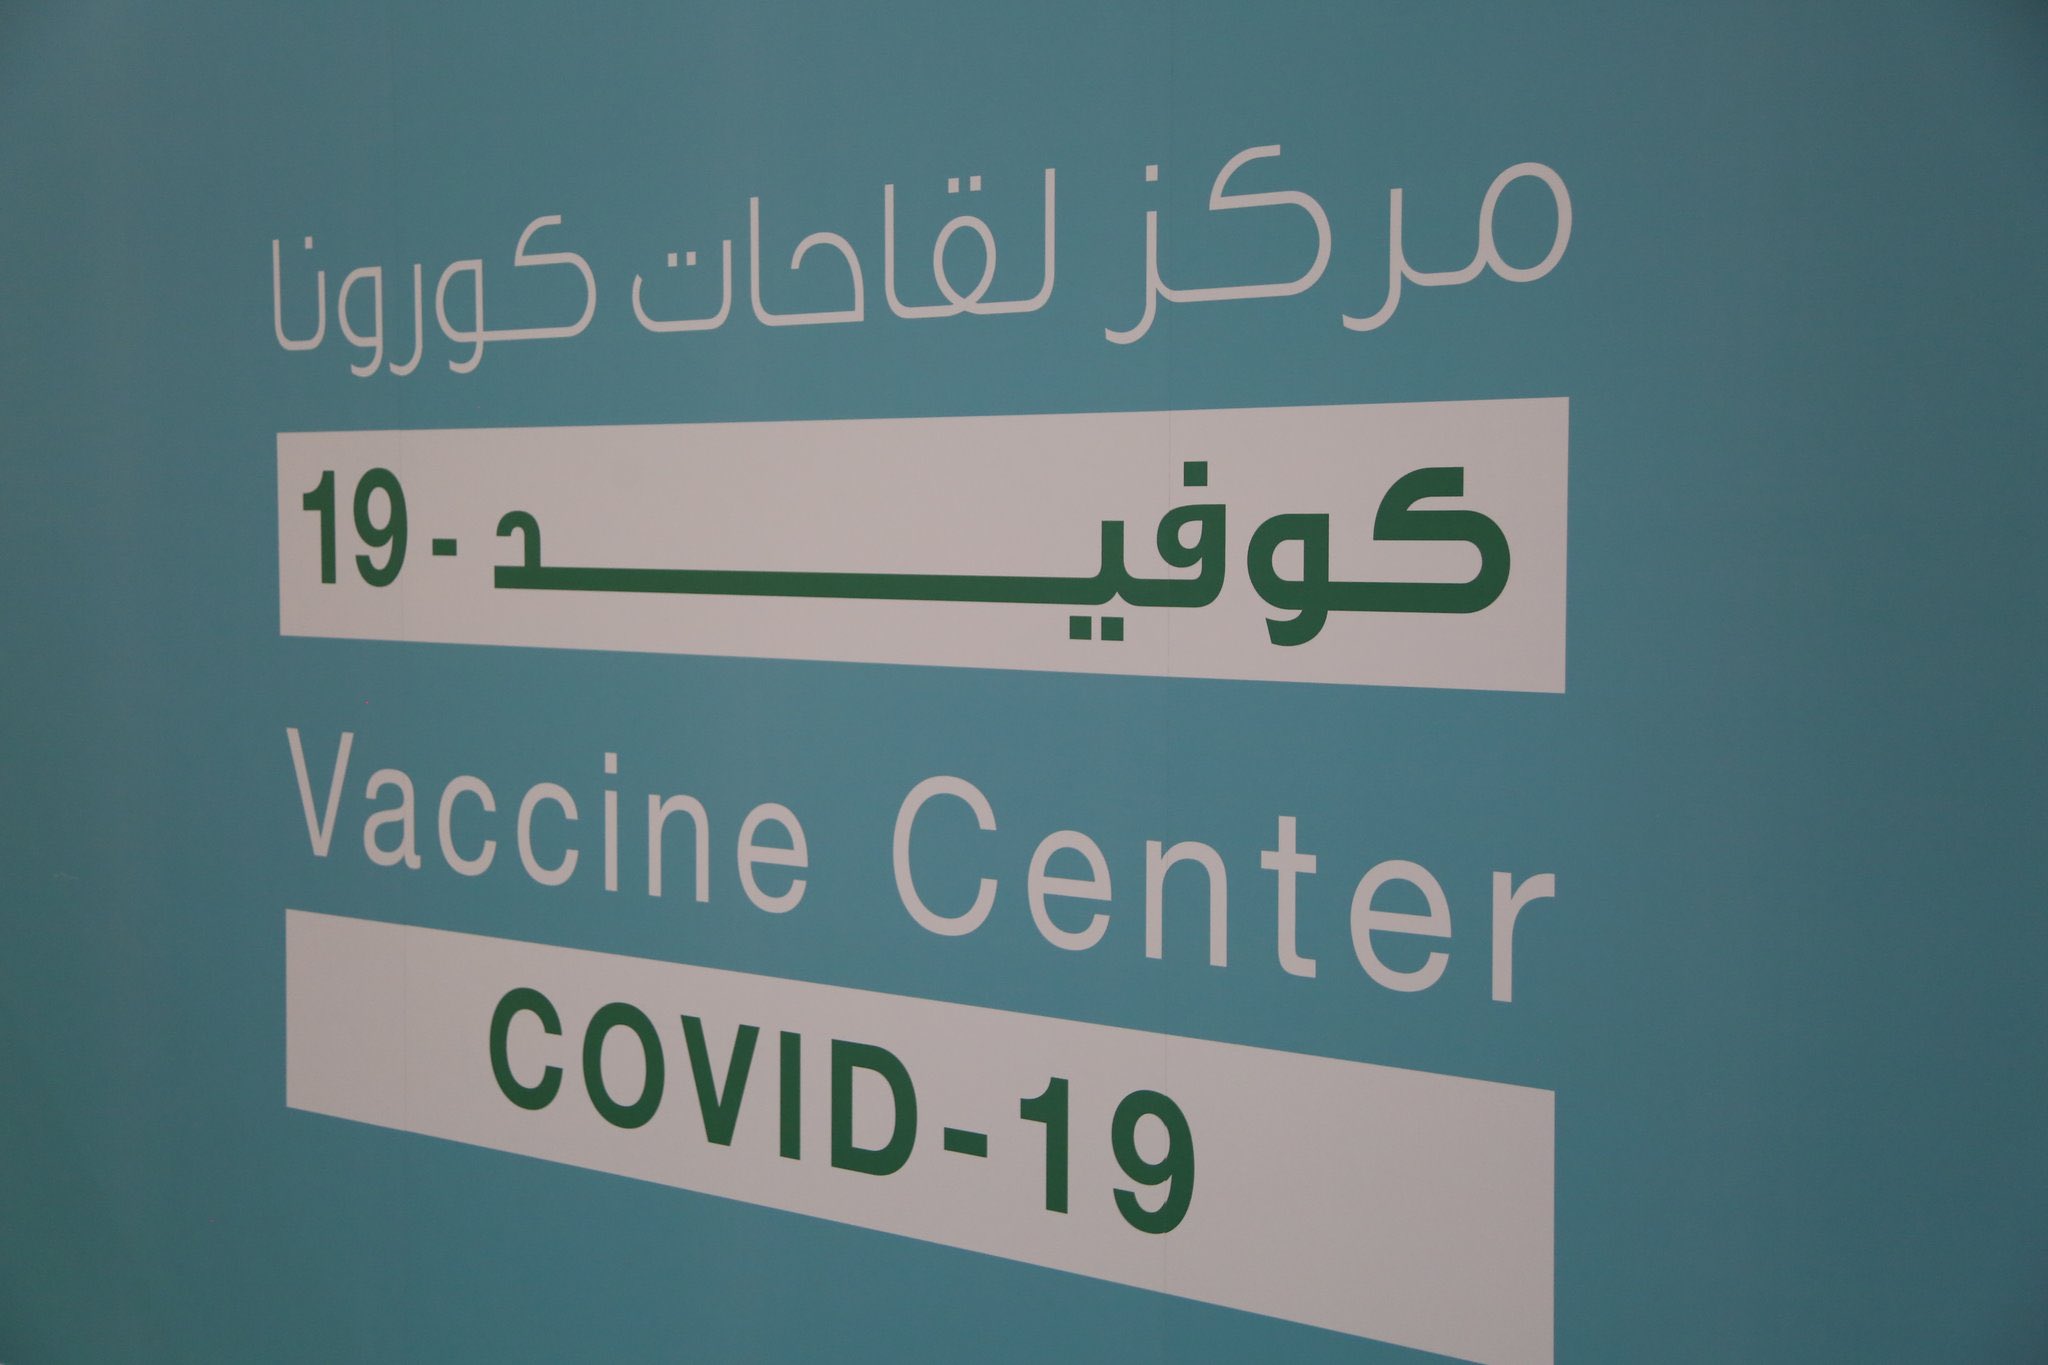 مركز صحي العكيشية نوع اللقاح